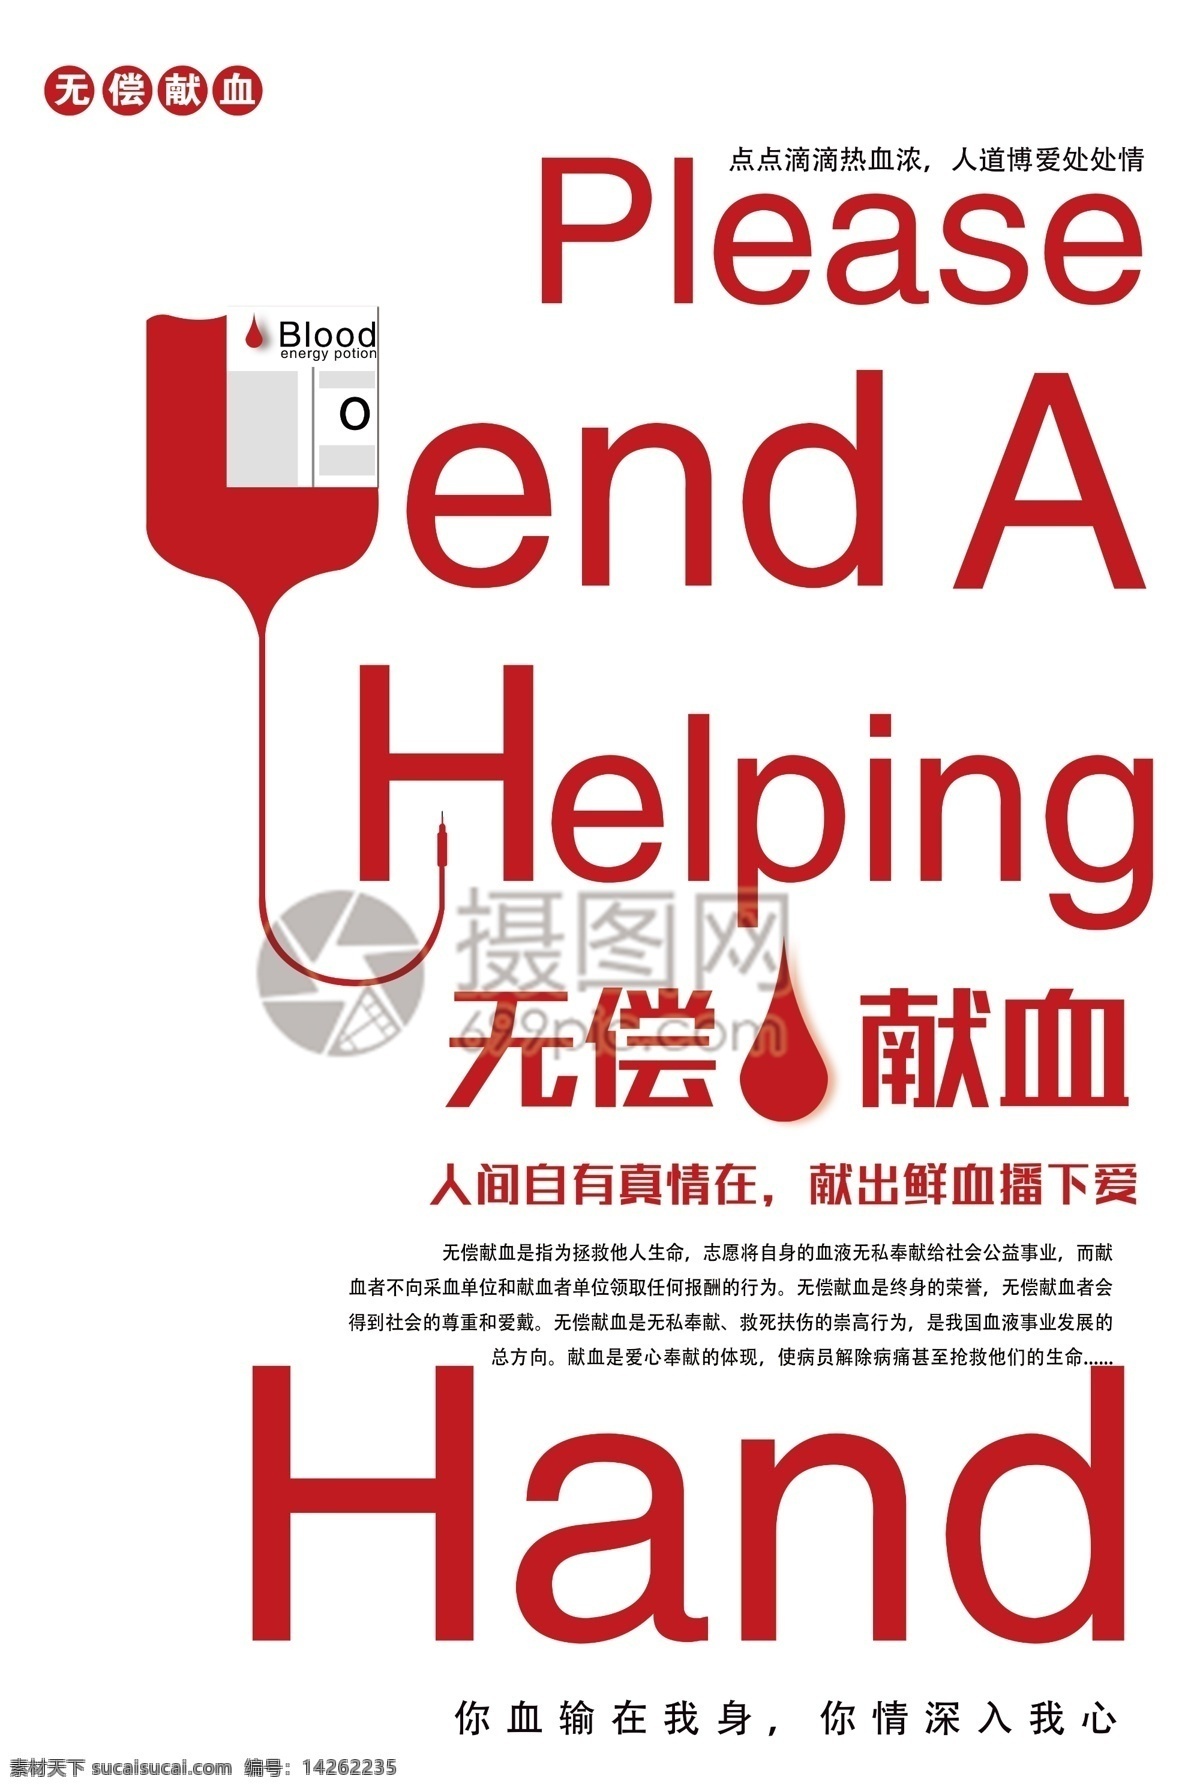 无偿献血 公益 海报 无偿 献血 公益海报 血液 爱心 捐献 捐血